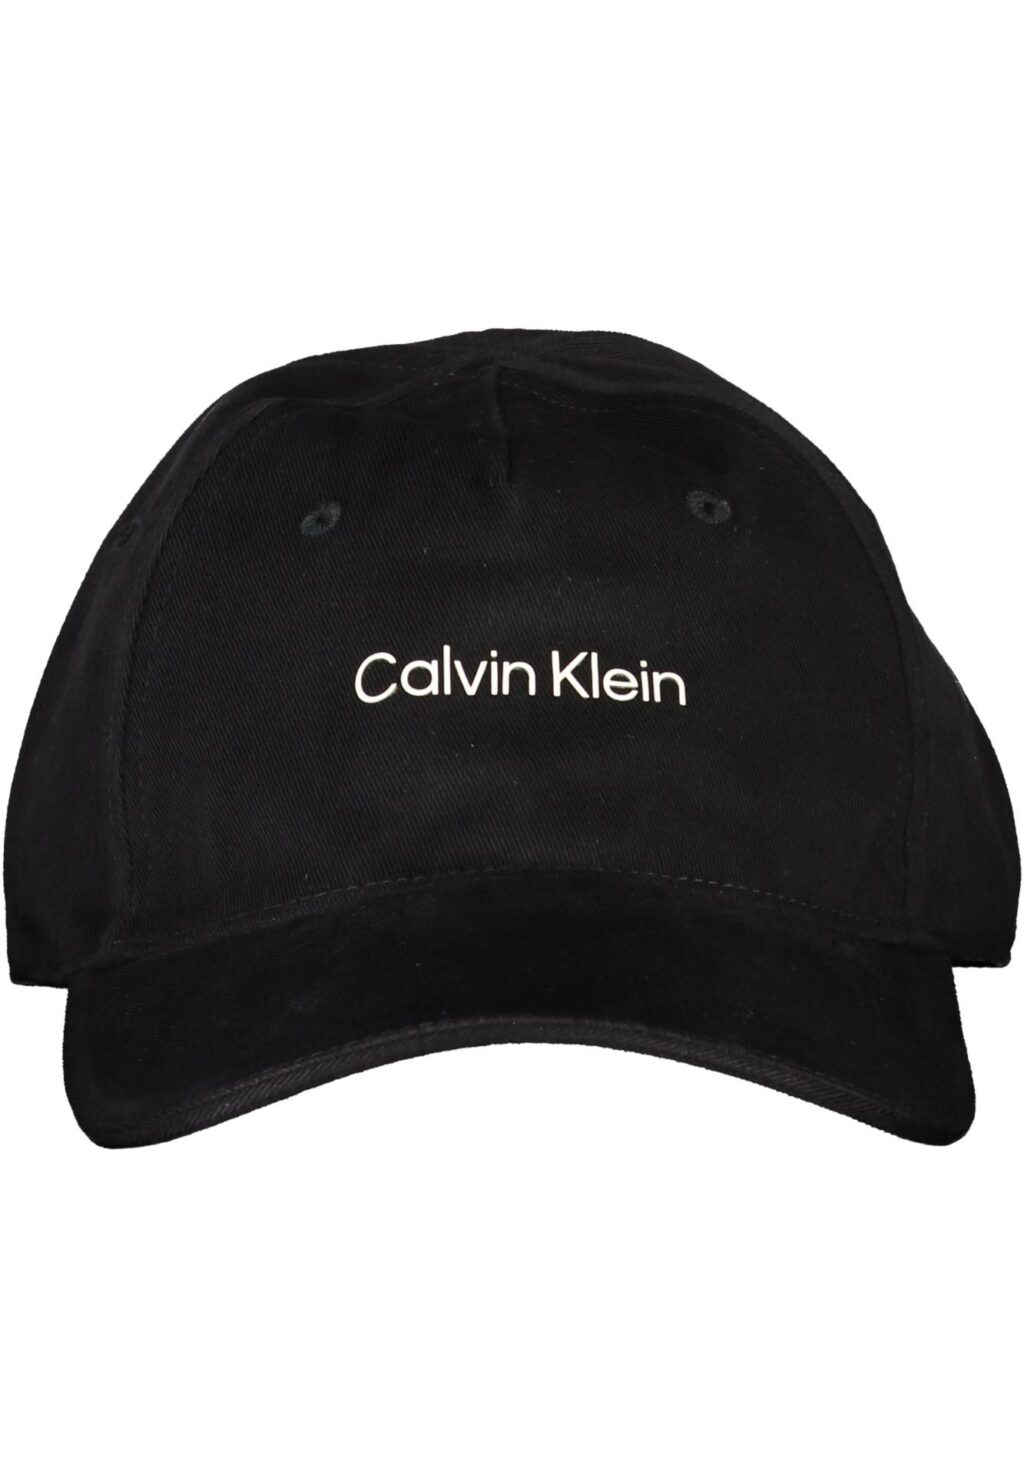 CALVIN KLEIN MEN'S BLACK HAT 0000PX0312_70560F3_NERO010